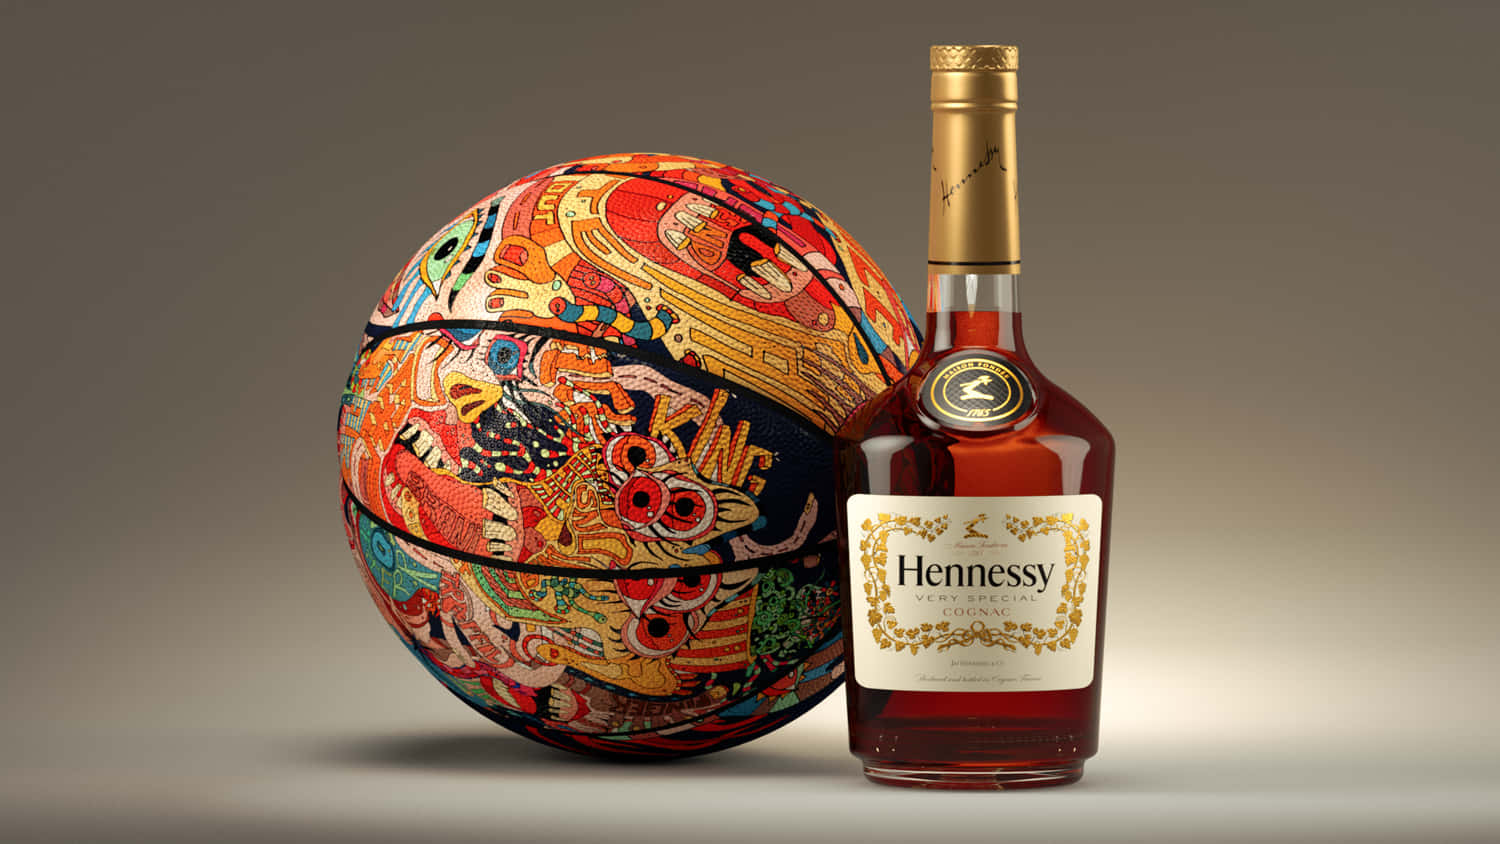 Hennessy 1500 X 844 Wallpaper